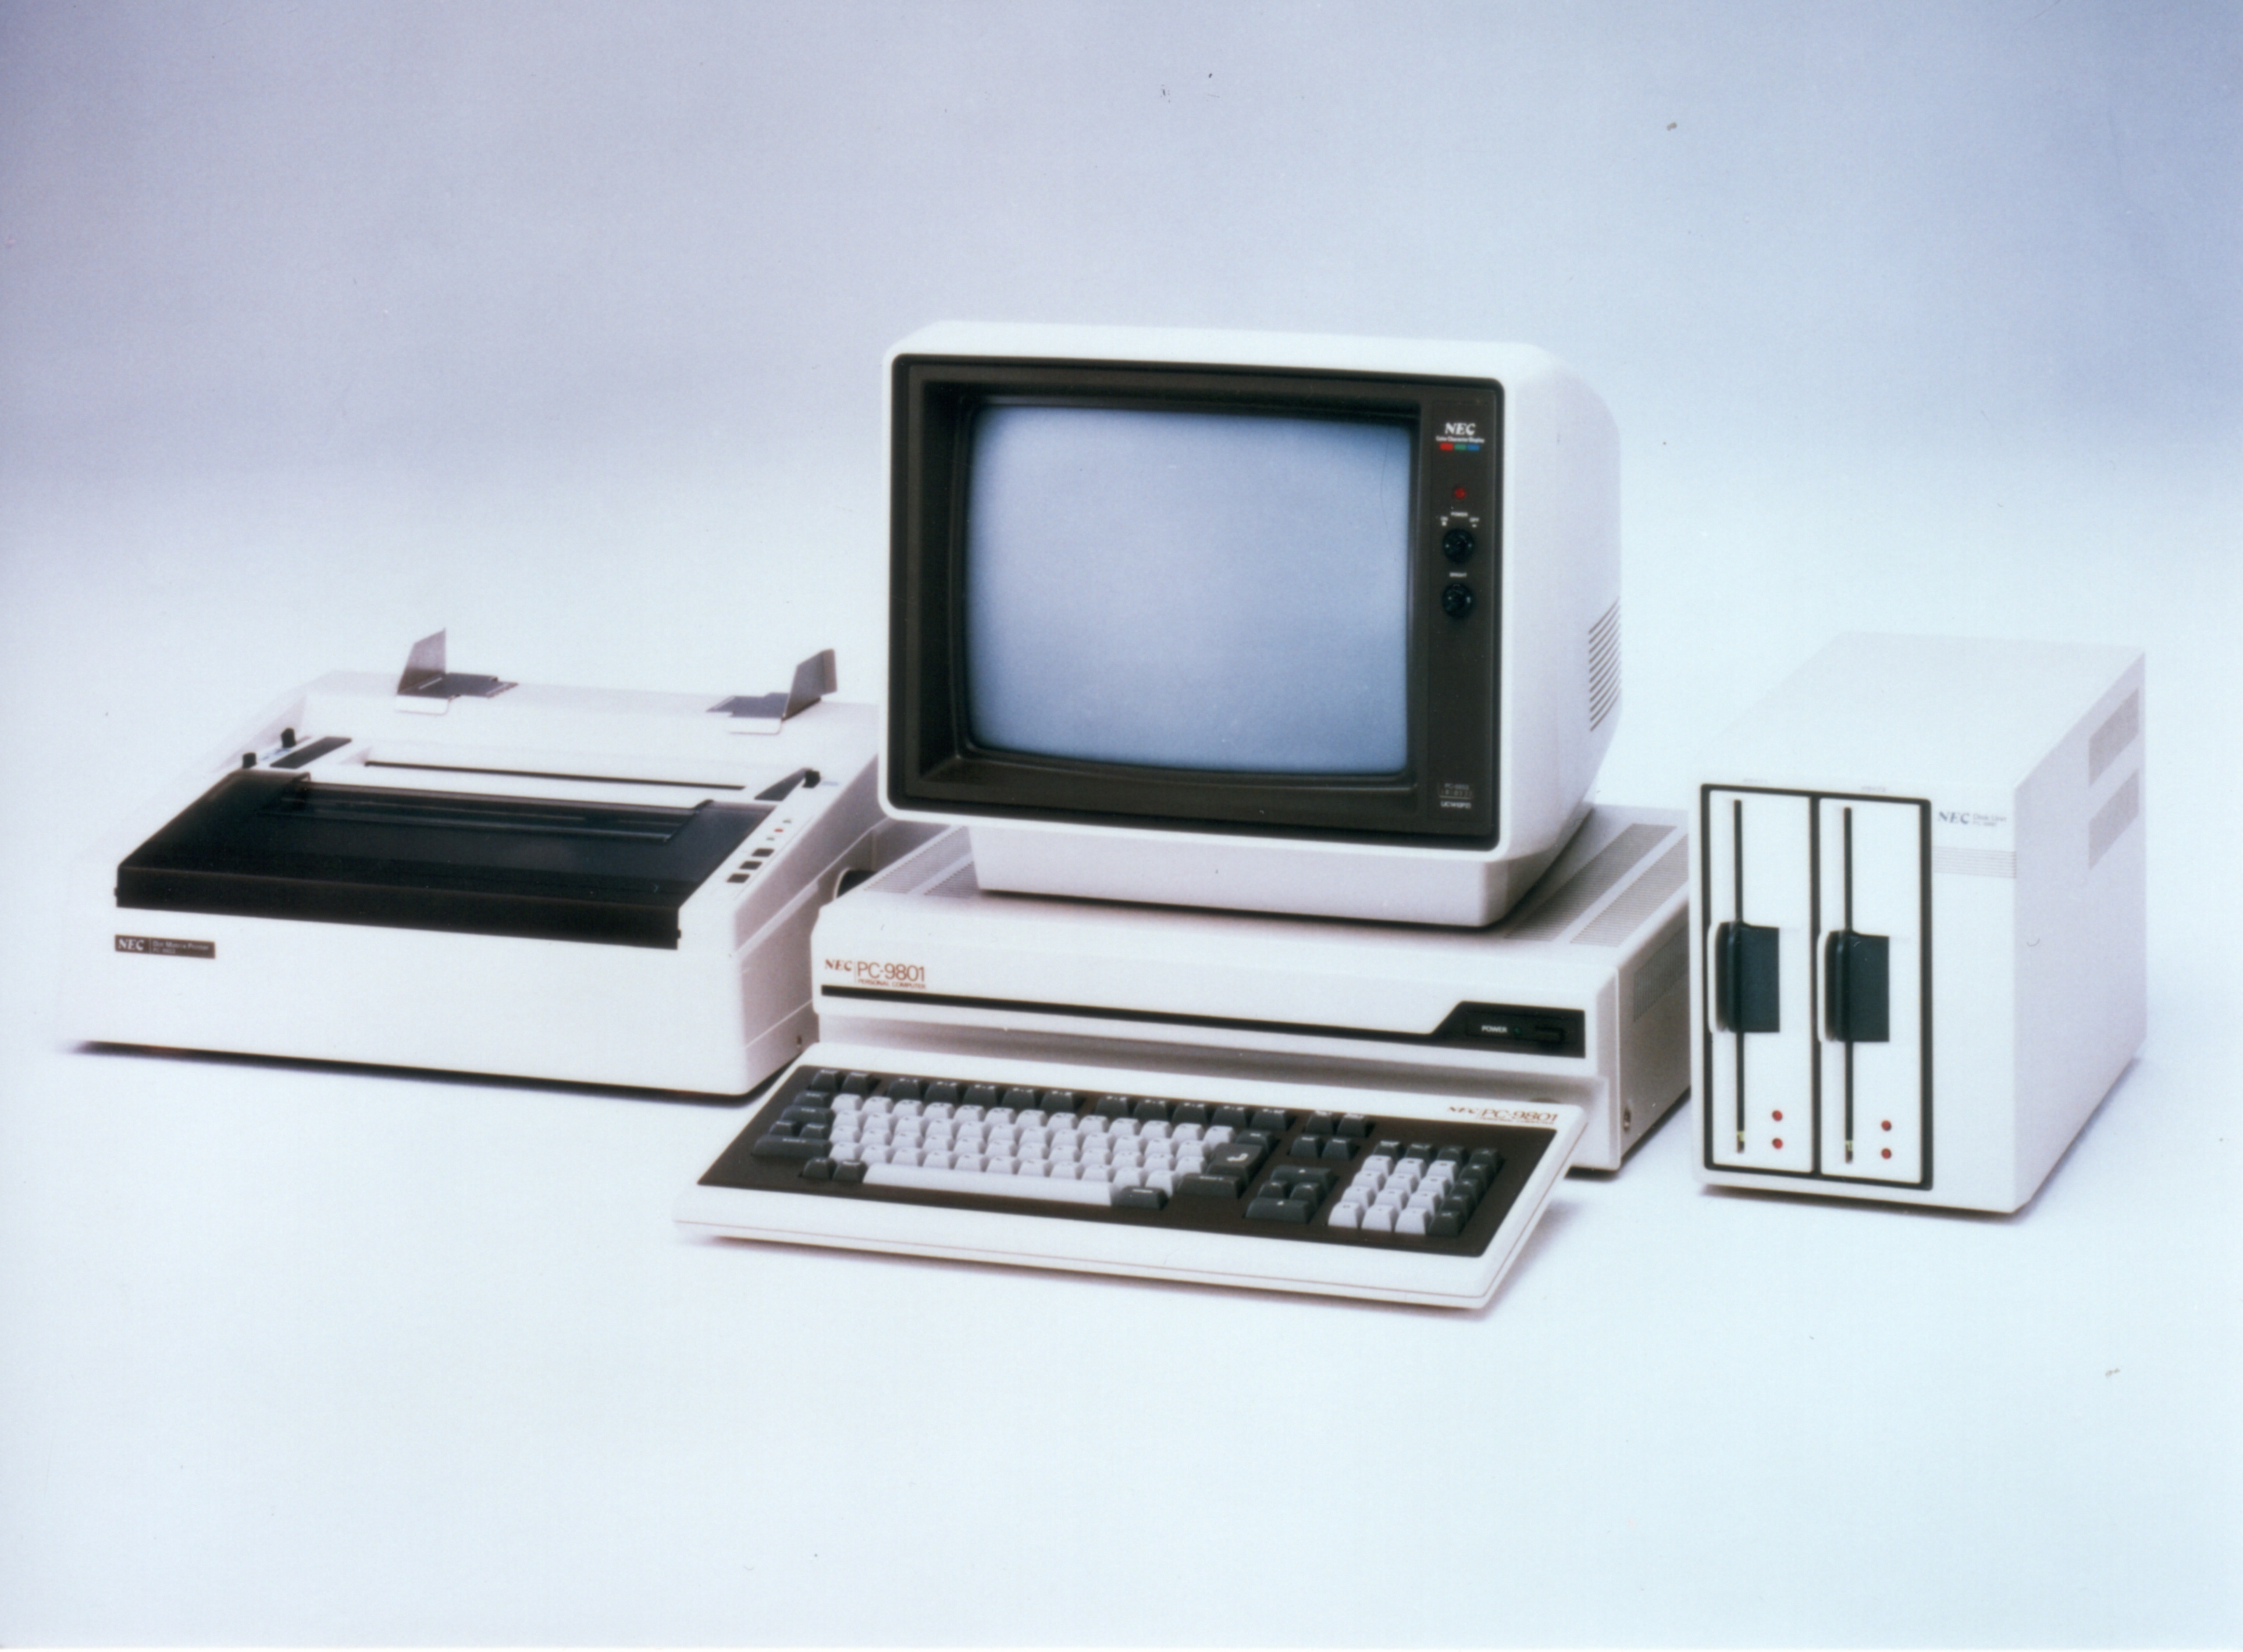 「PC-9801」。マイクロコンピュータに8086を採用、128Kバイトのメインメモリを標準で搭載した16ビットパソコンだ